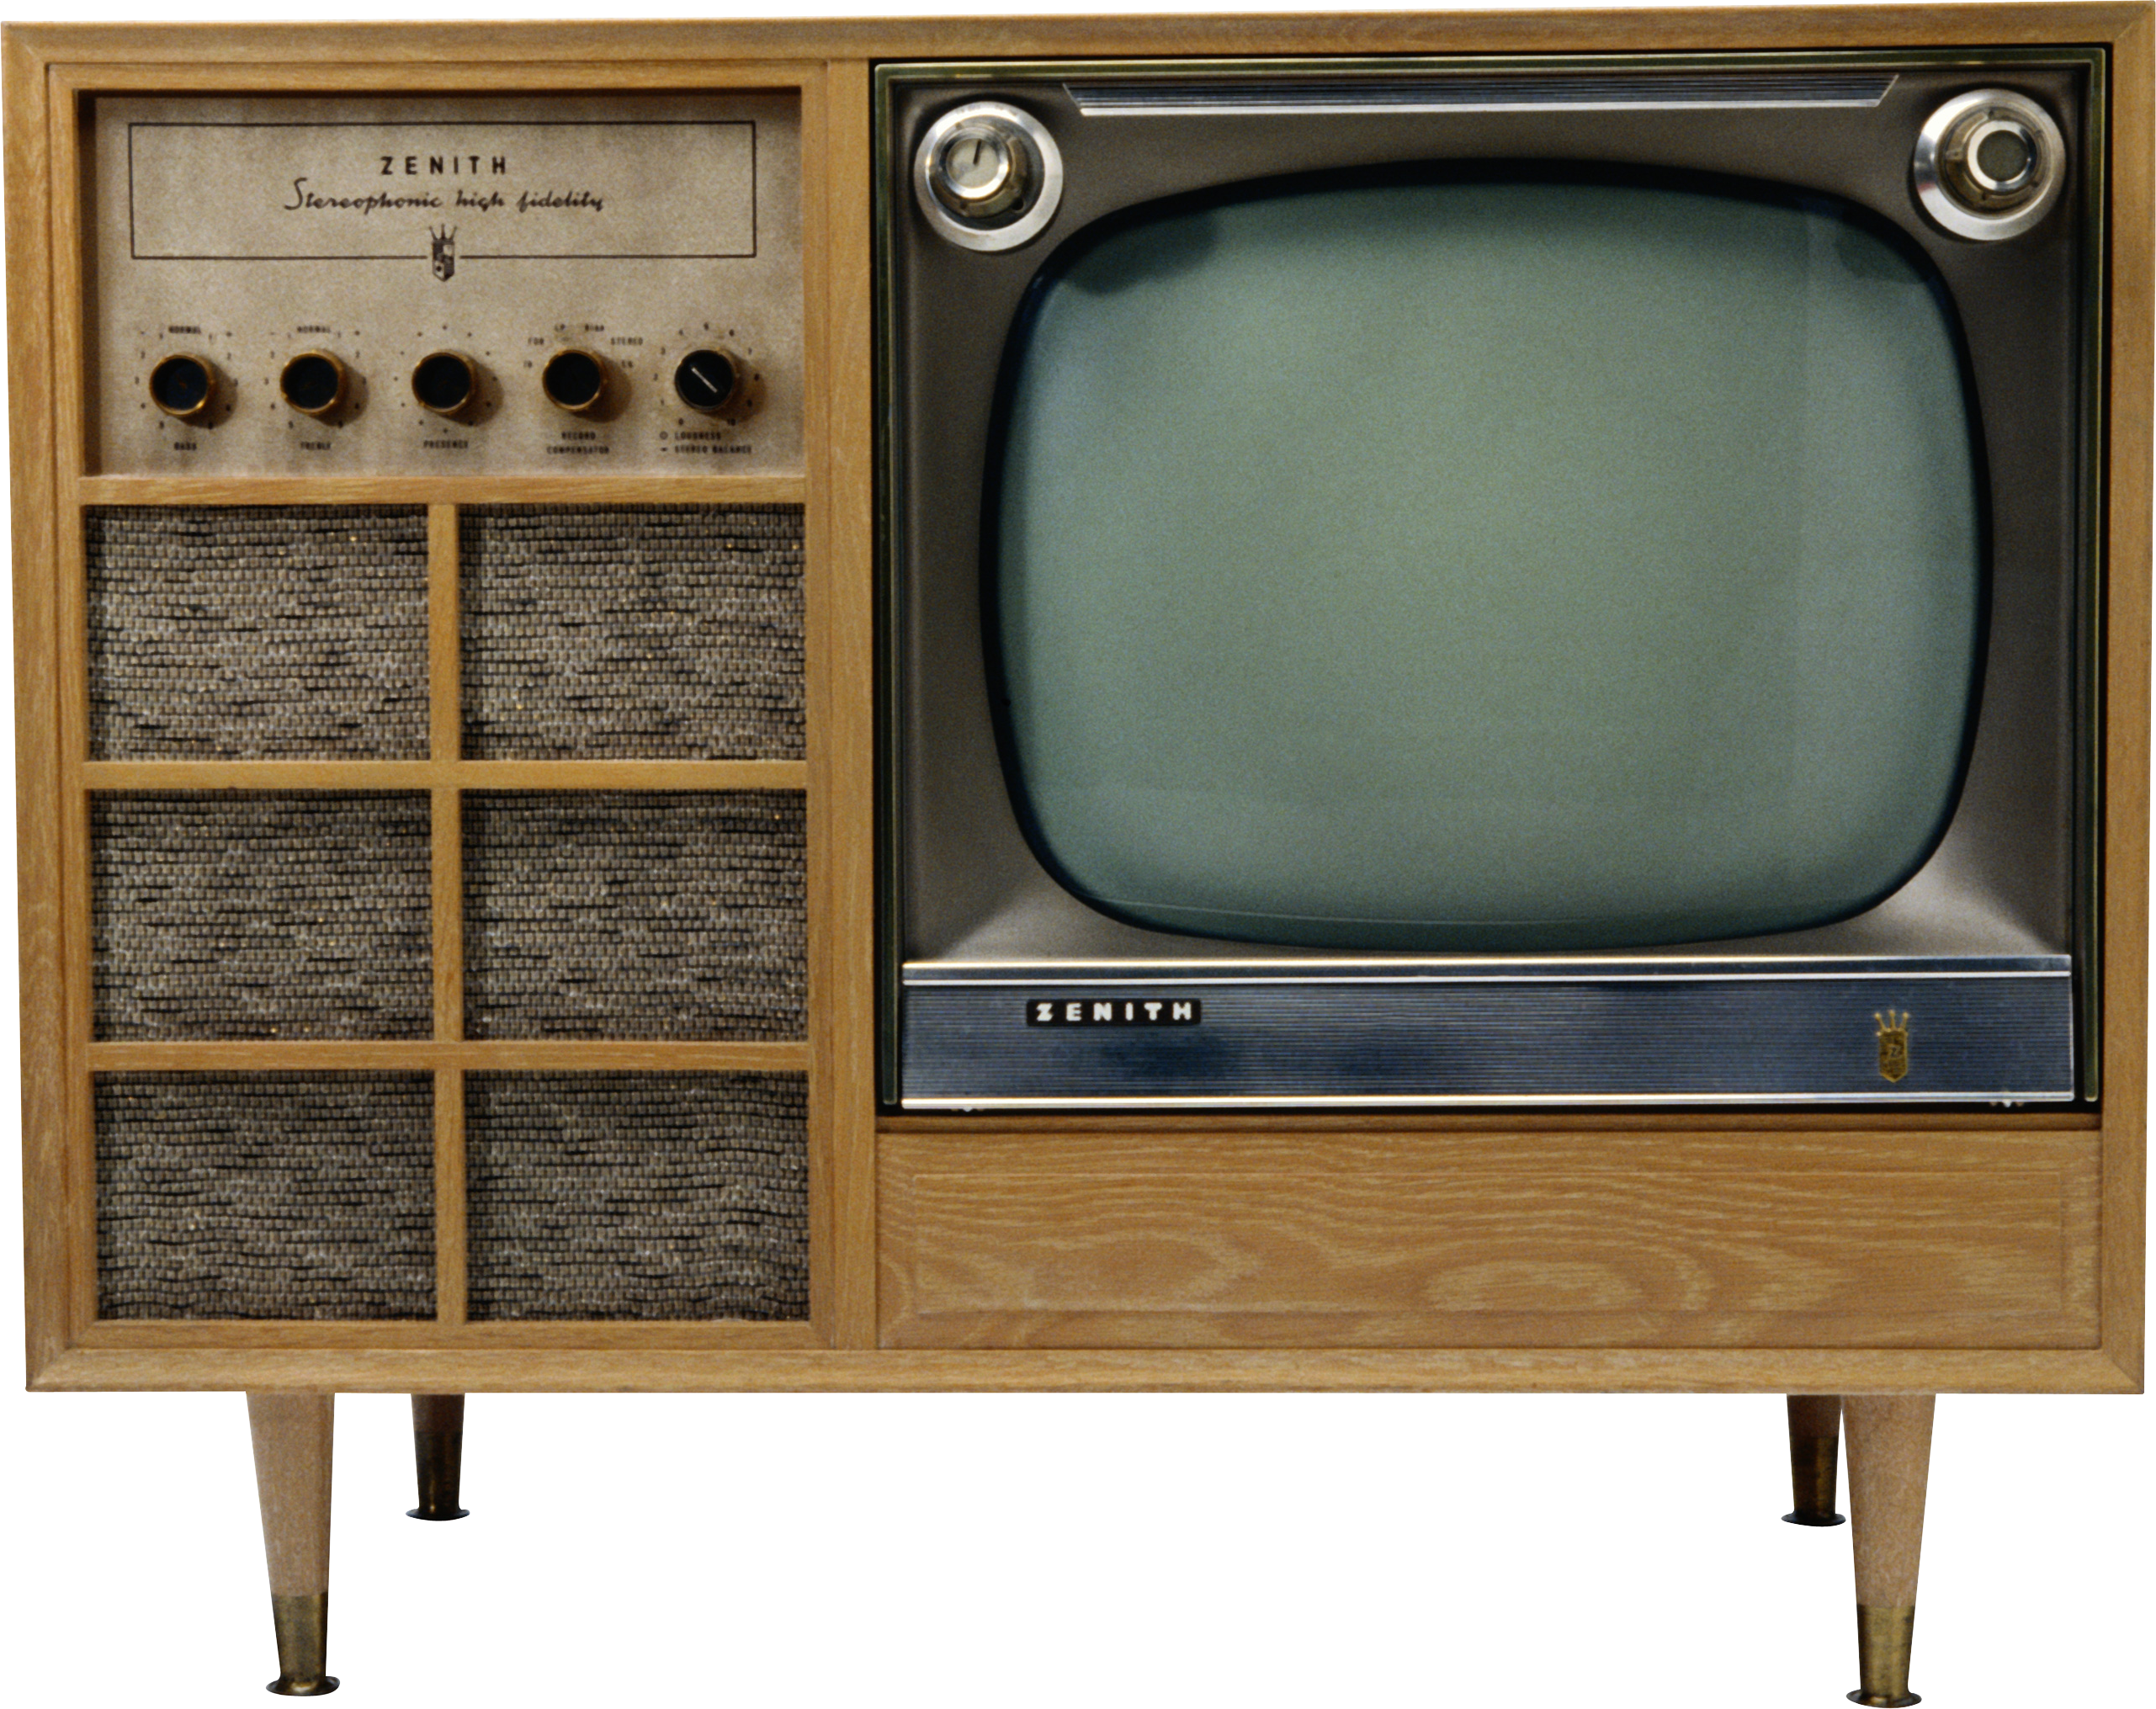 古いテレビ